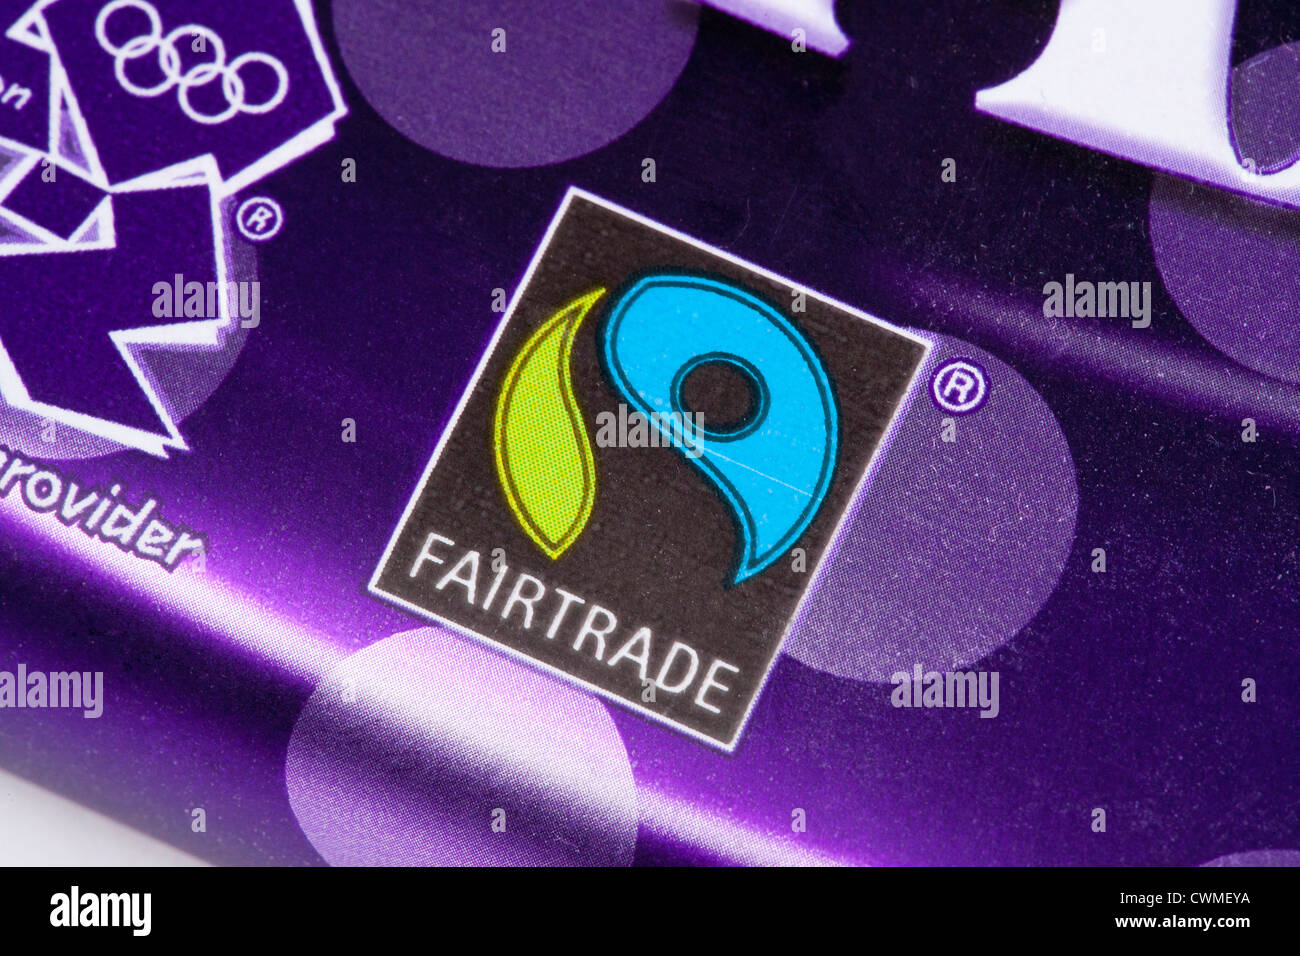 Client Logos — The FareTrade